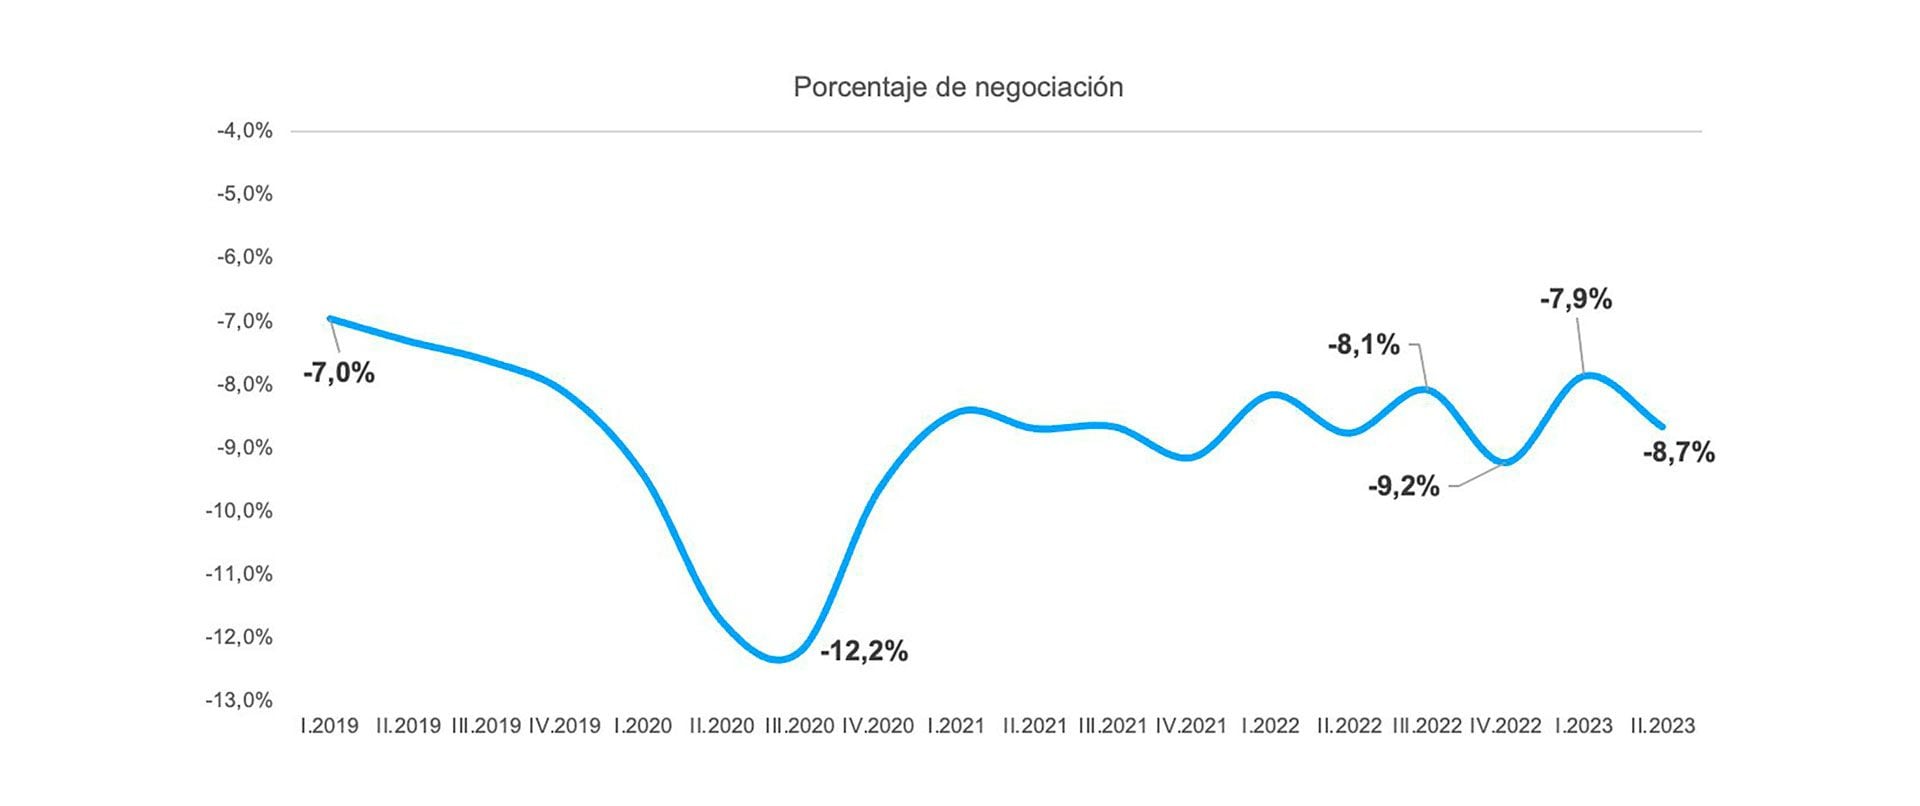 Fuente: Relevamiento de Operaciones Inmobiliarias (ROI), en este gráfico se puede observar que los precios en las negociaciones bajaron un 8,7% en líneas generales